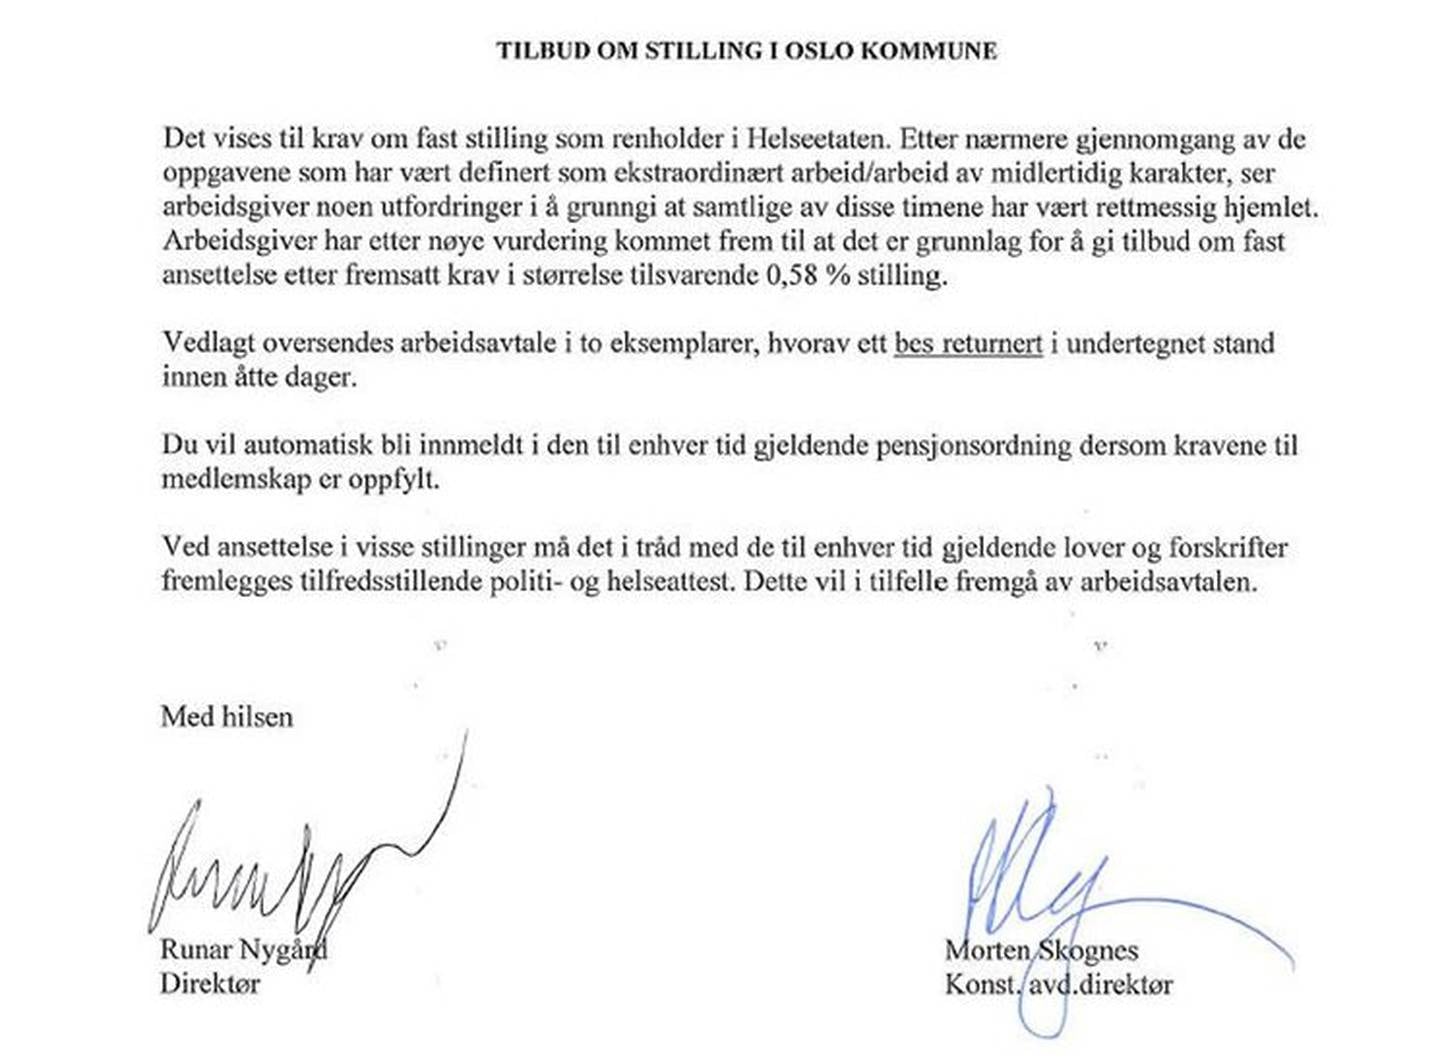 Brevet fra Oslo kommune med tilbud om fast stilling.